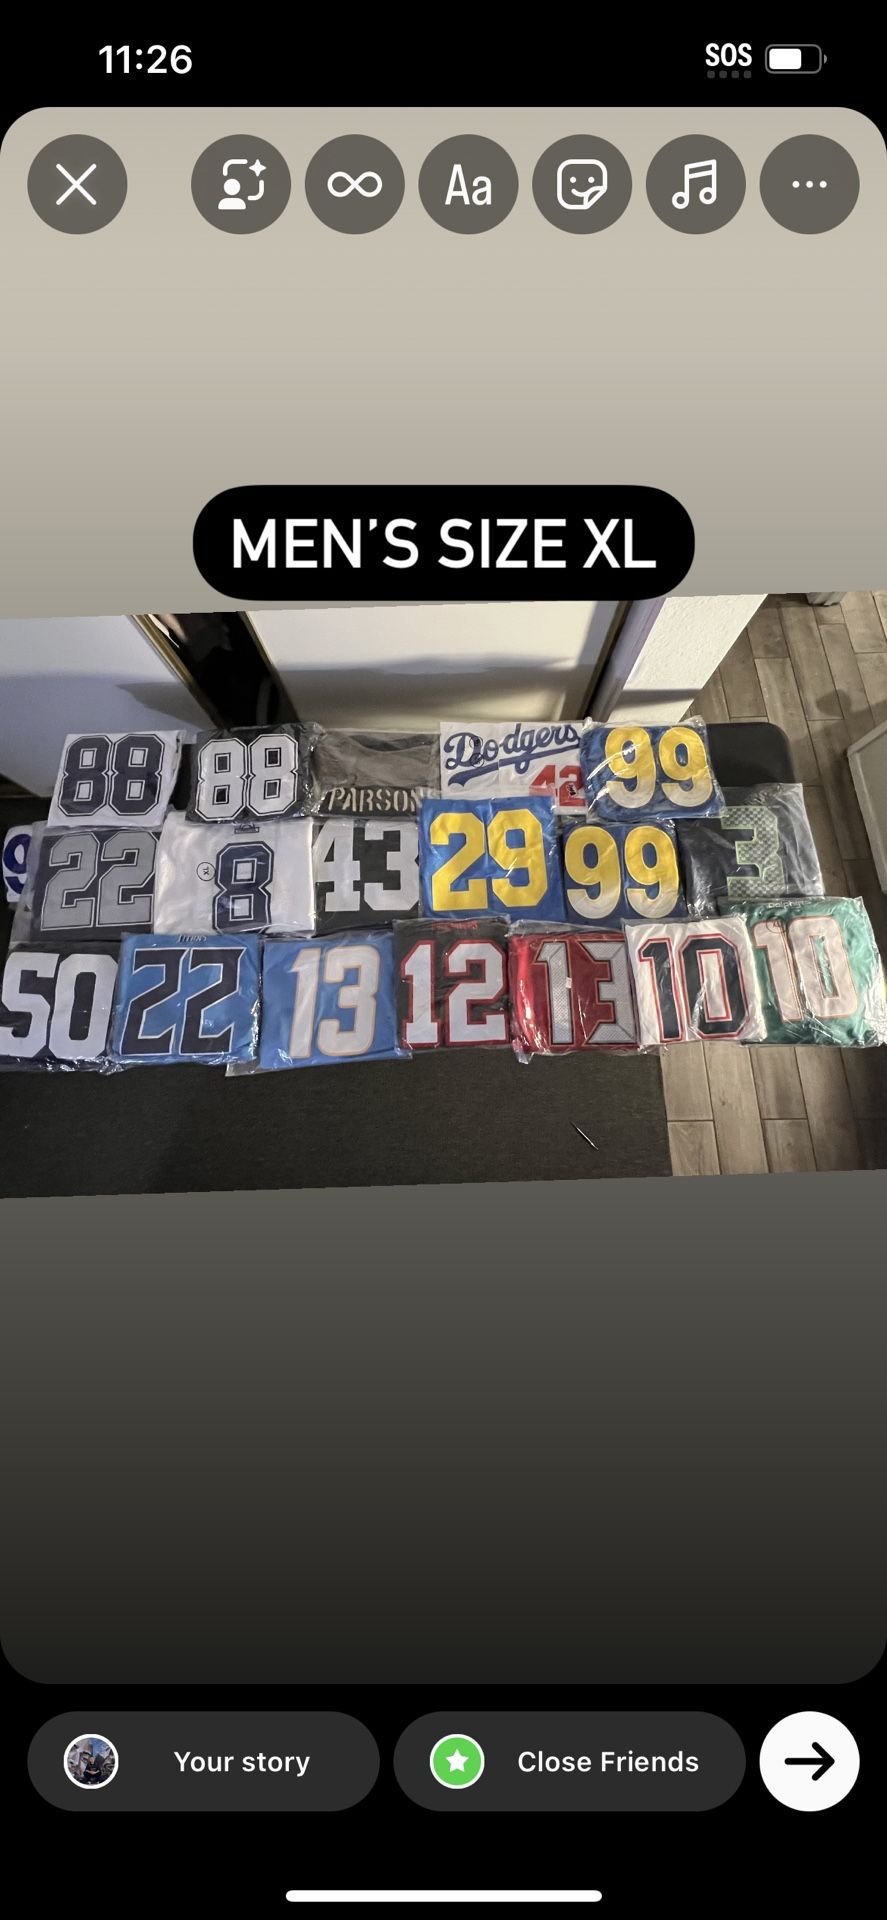 NBA, NFL, MLB Jerseys Men’s Size Xl